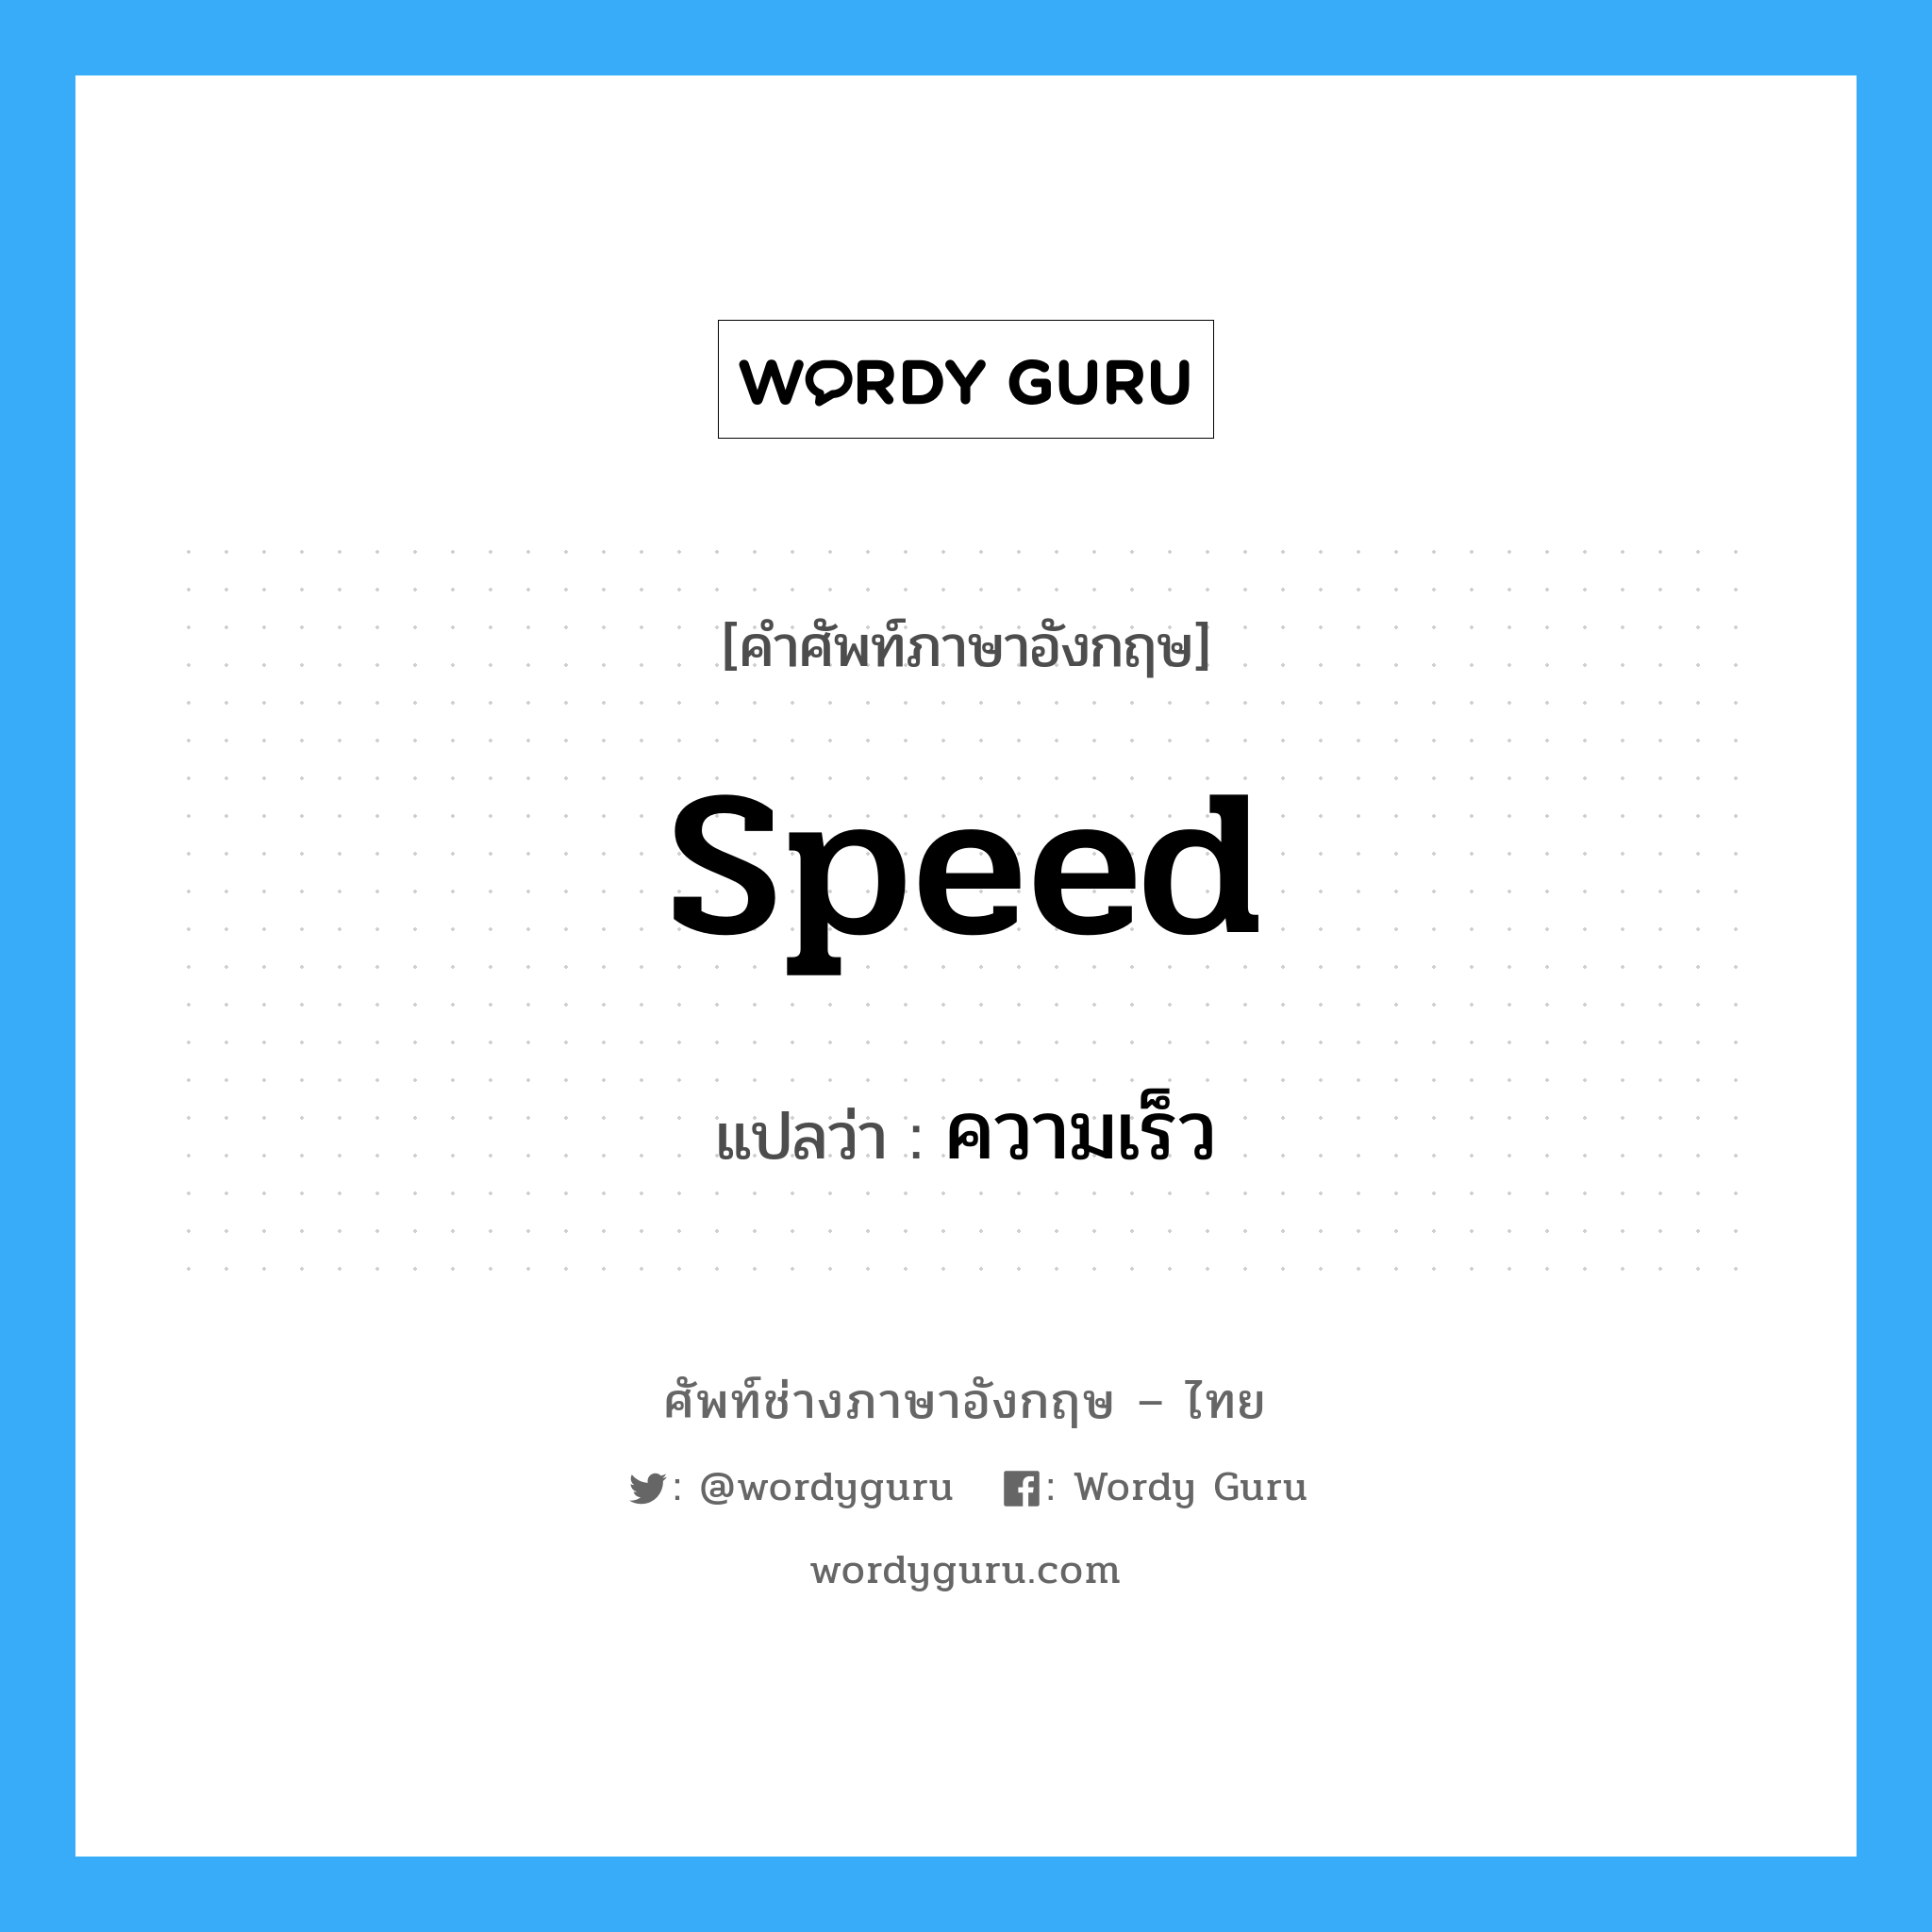 ความเร็ว ภาษาอังกฤษ?, คำศัพท์ช่างภาษาอังกฤษ - ไทย ความเร็ว คำศัพท์ภาษาอังกฤษ ความเร็ว แปลว่า speed